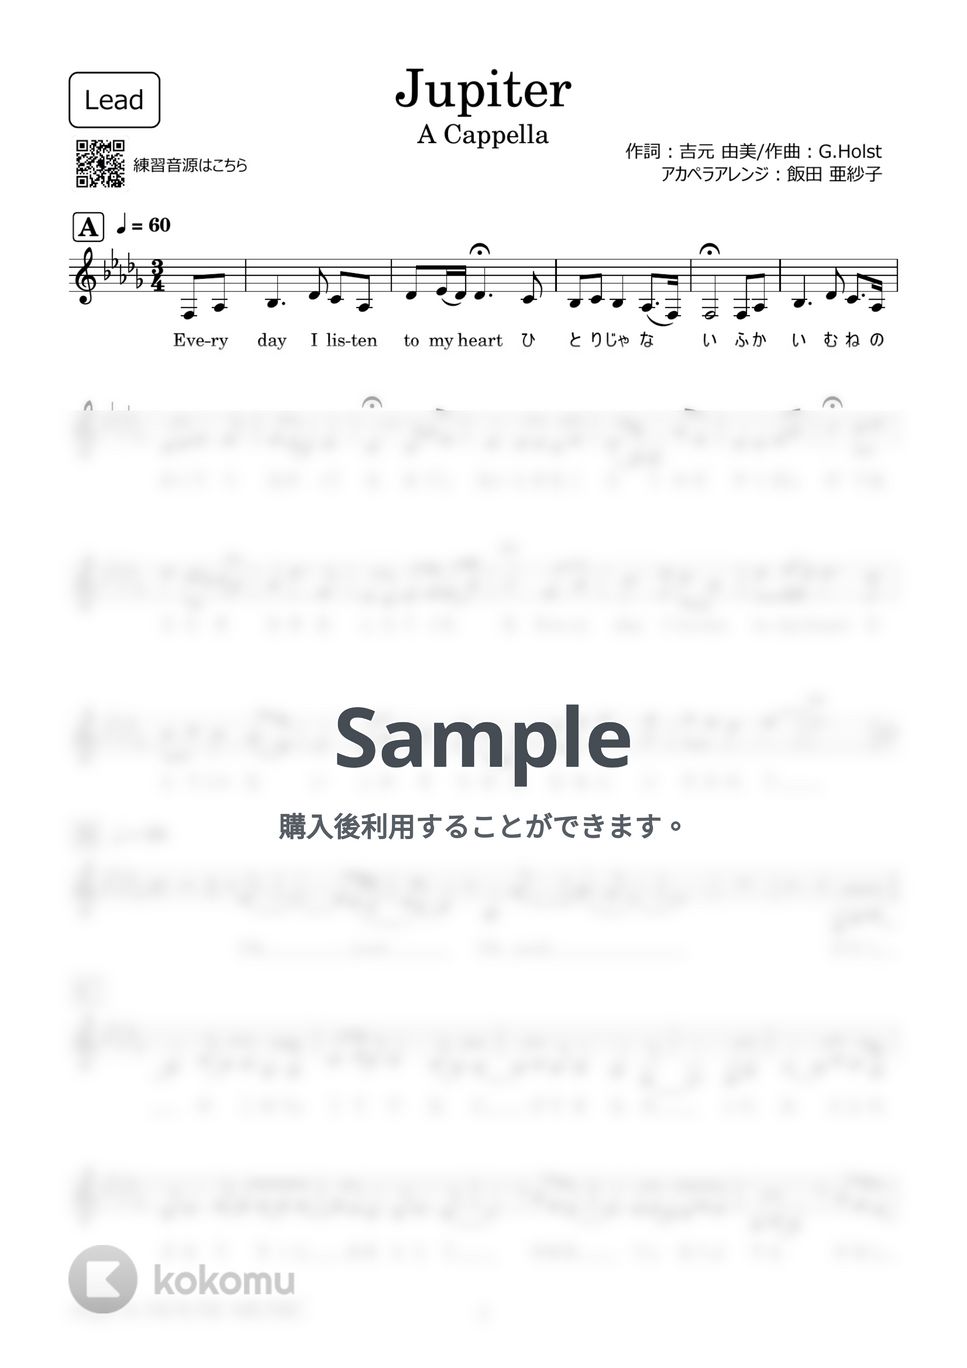 平原 綾香 - Jupiter (アカペラ楽譜♪Leadパート譜) by 飯田 亜紗子